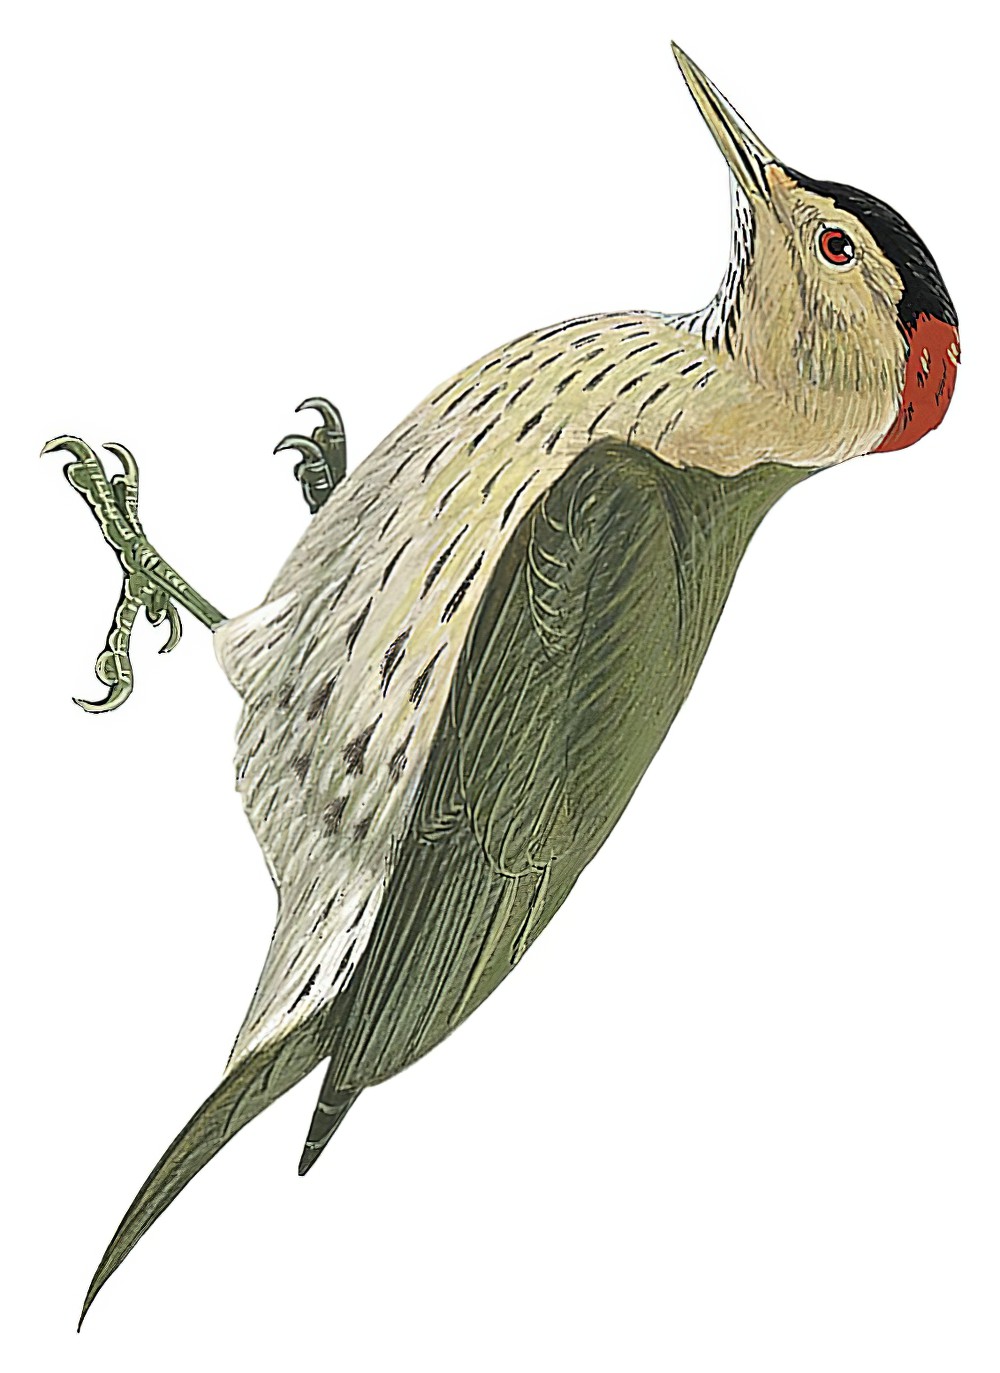 埃氏啄木鸟 / Elliot's Woodpecker / Dendropicos elliotii